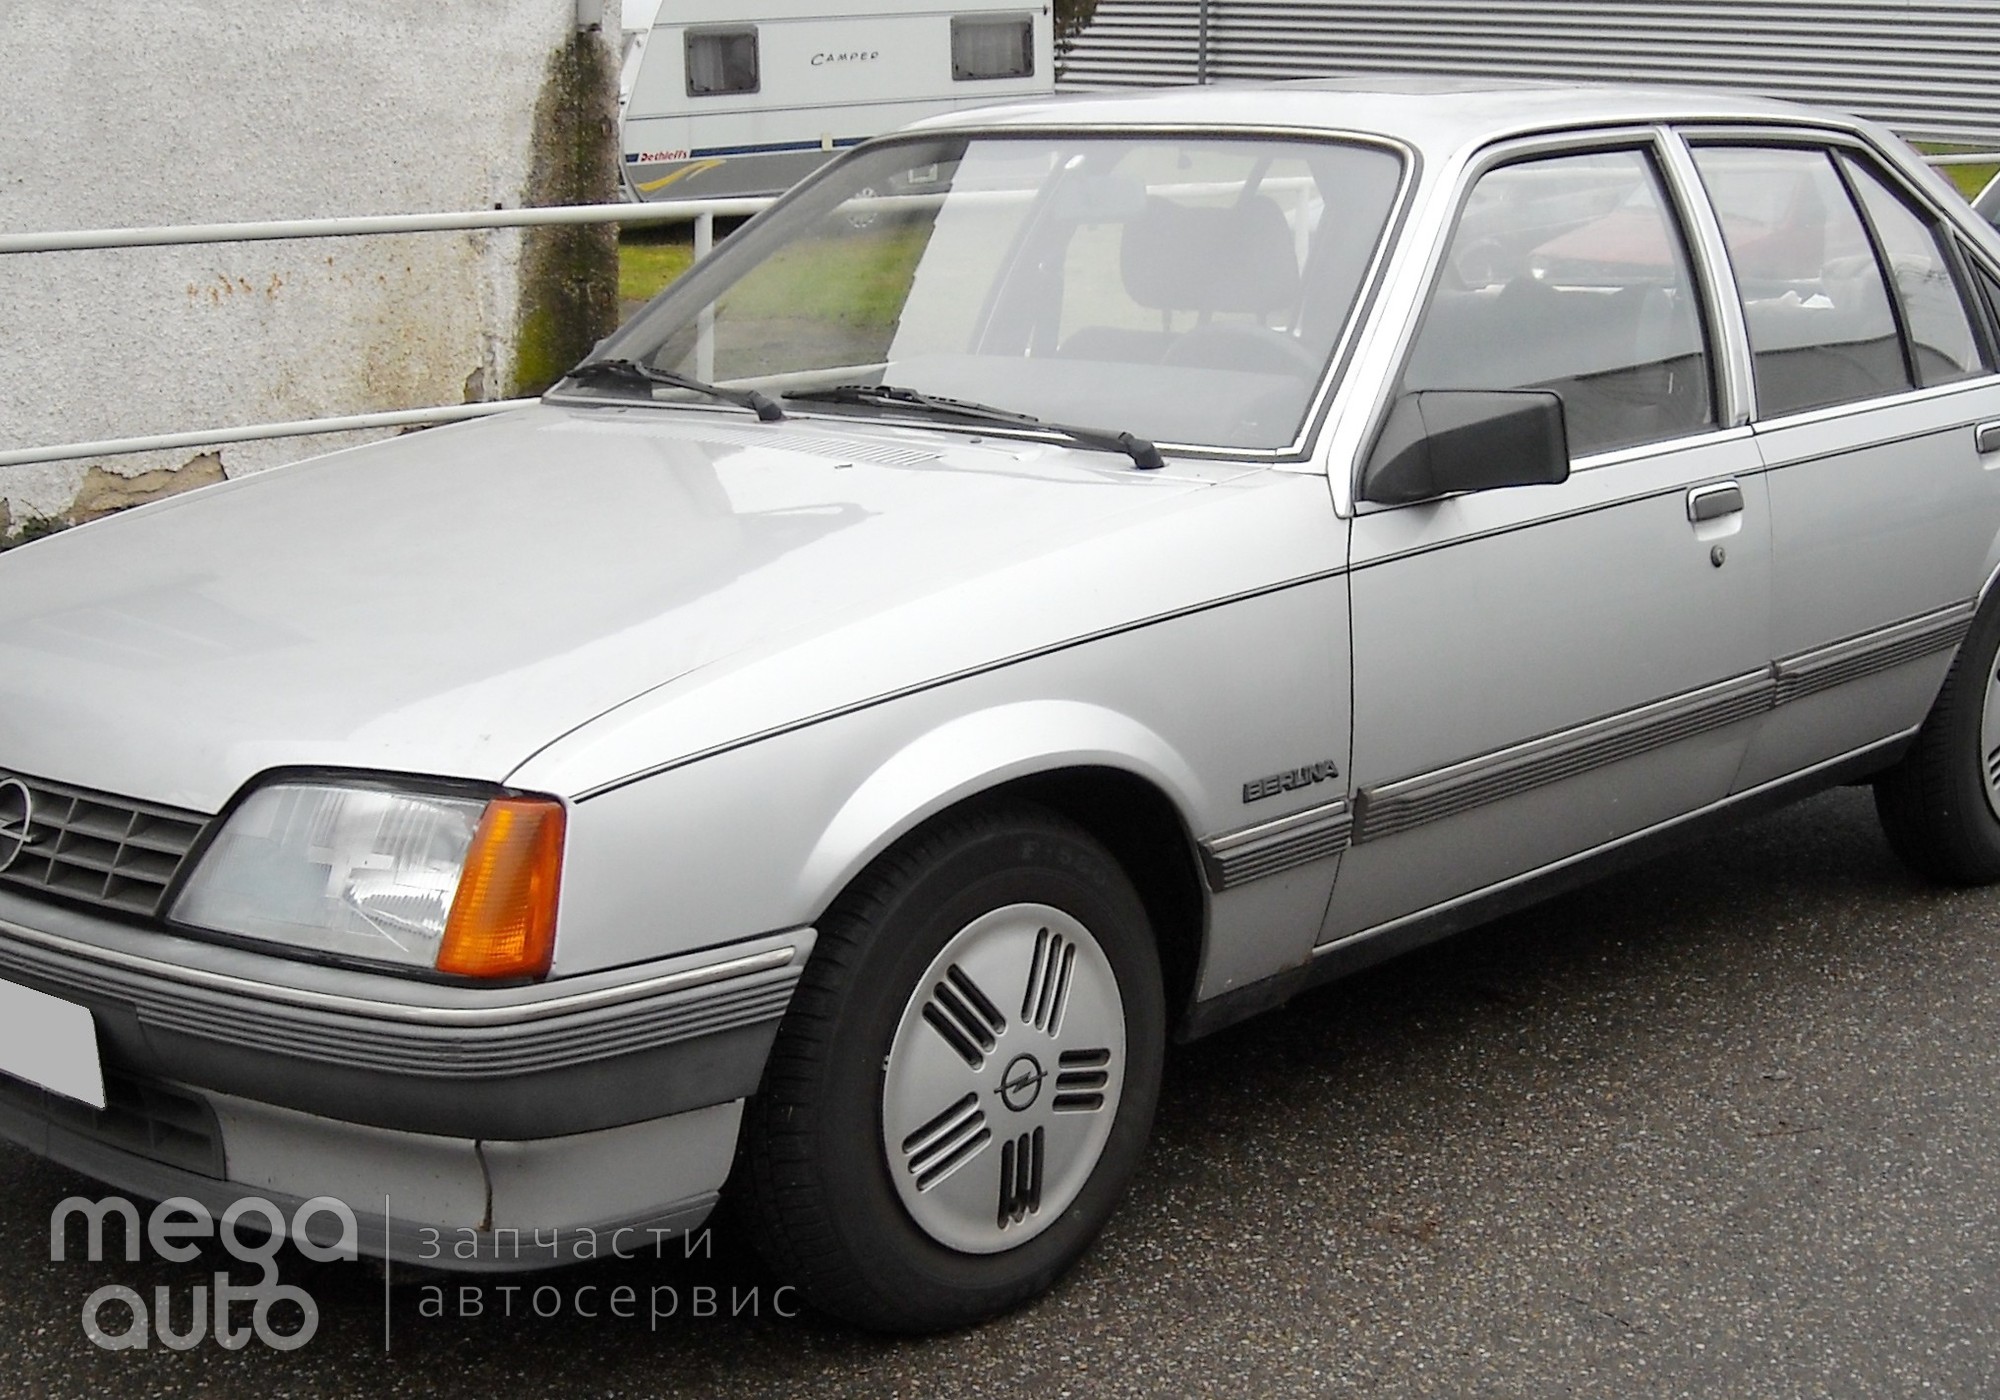 Opel Kadett E 1988 г. в разборе